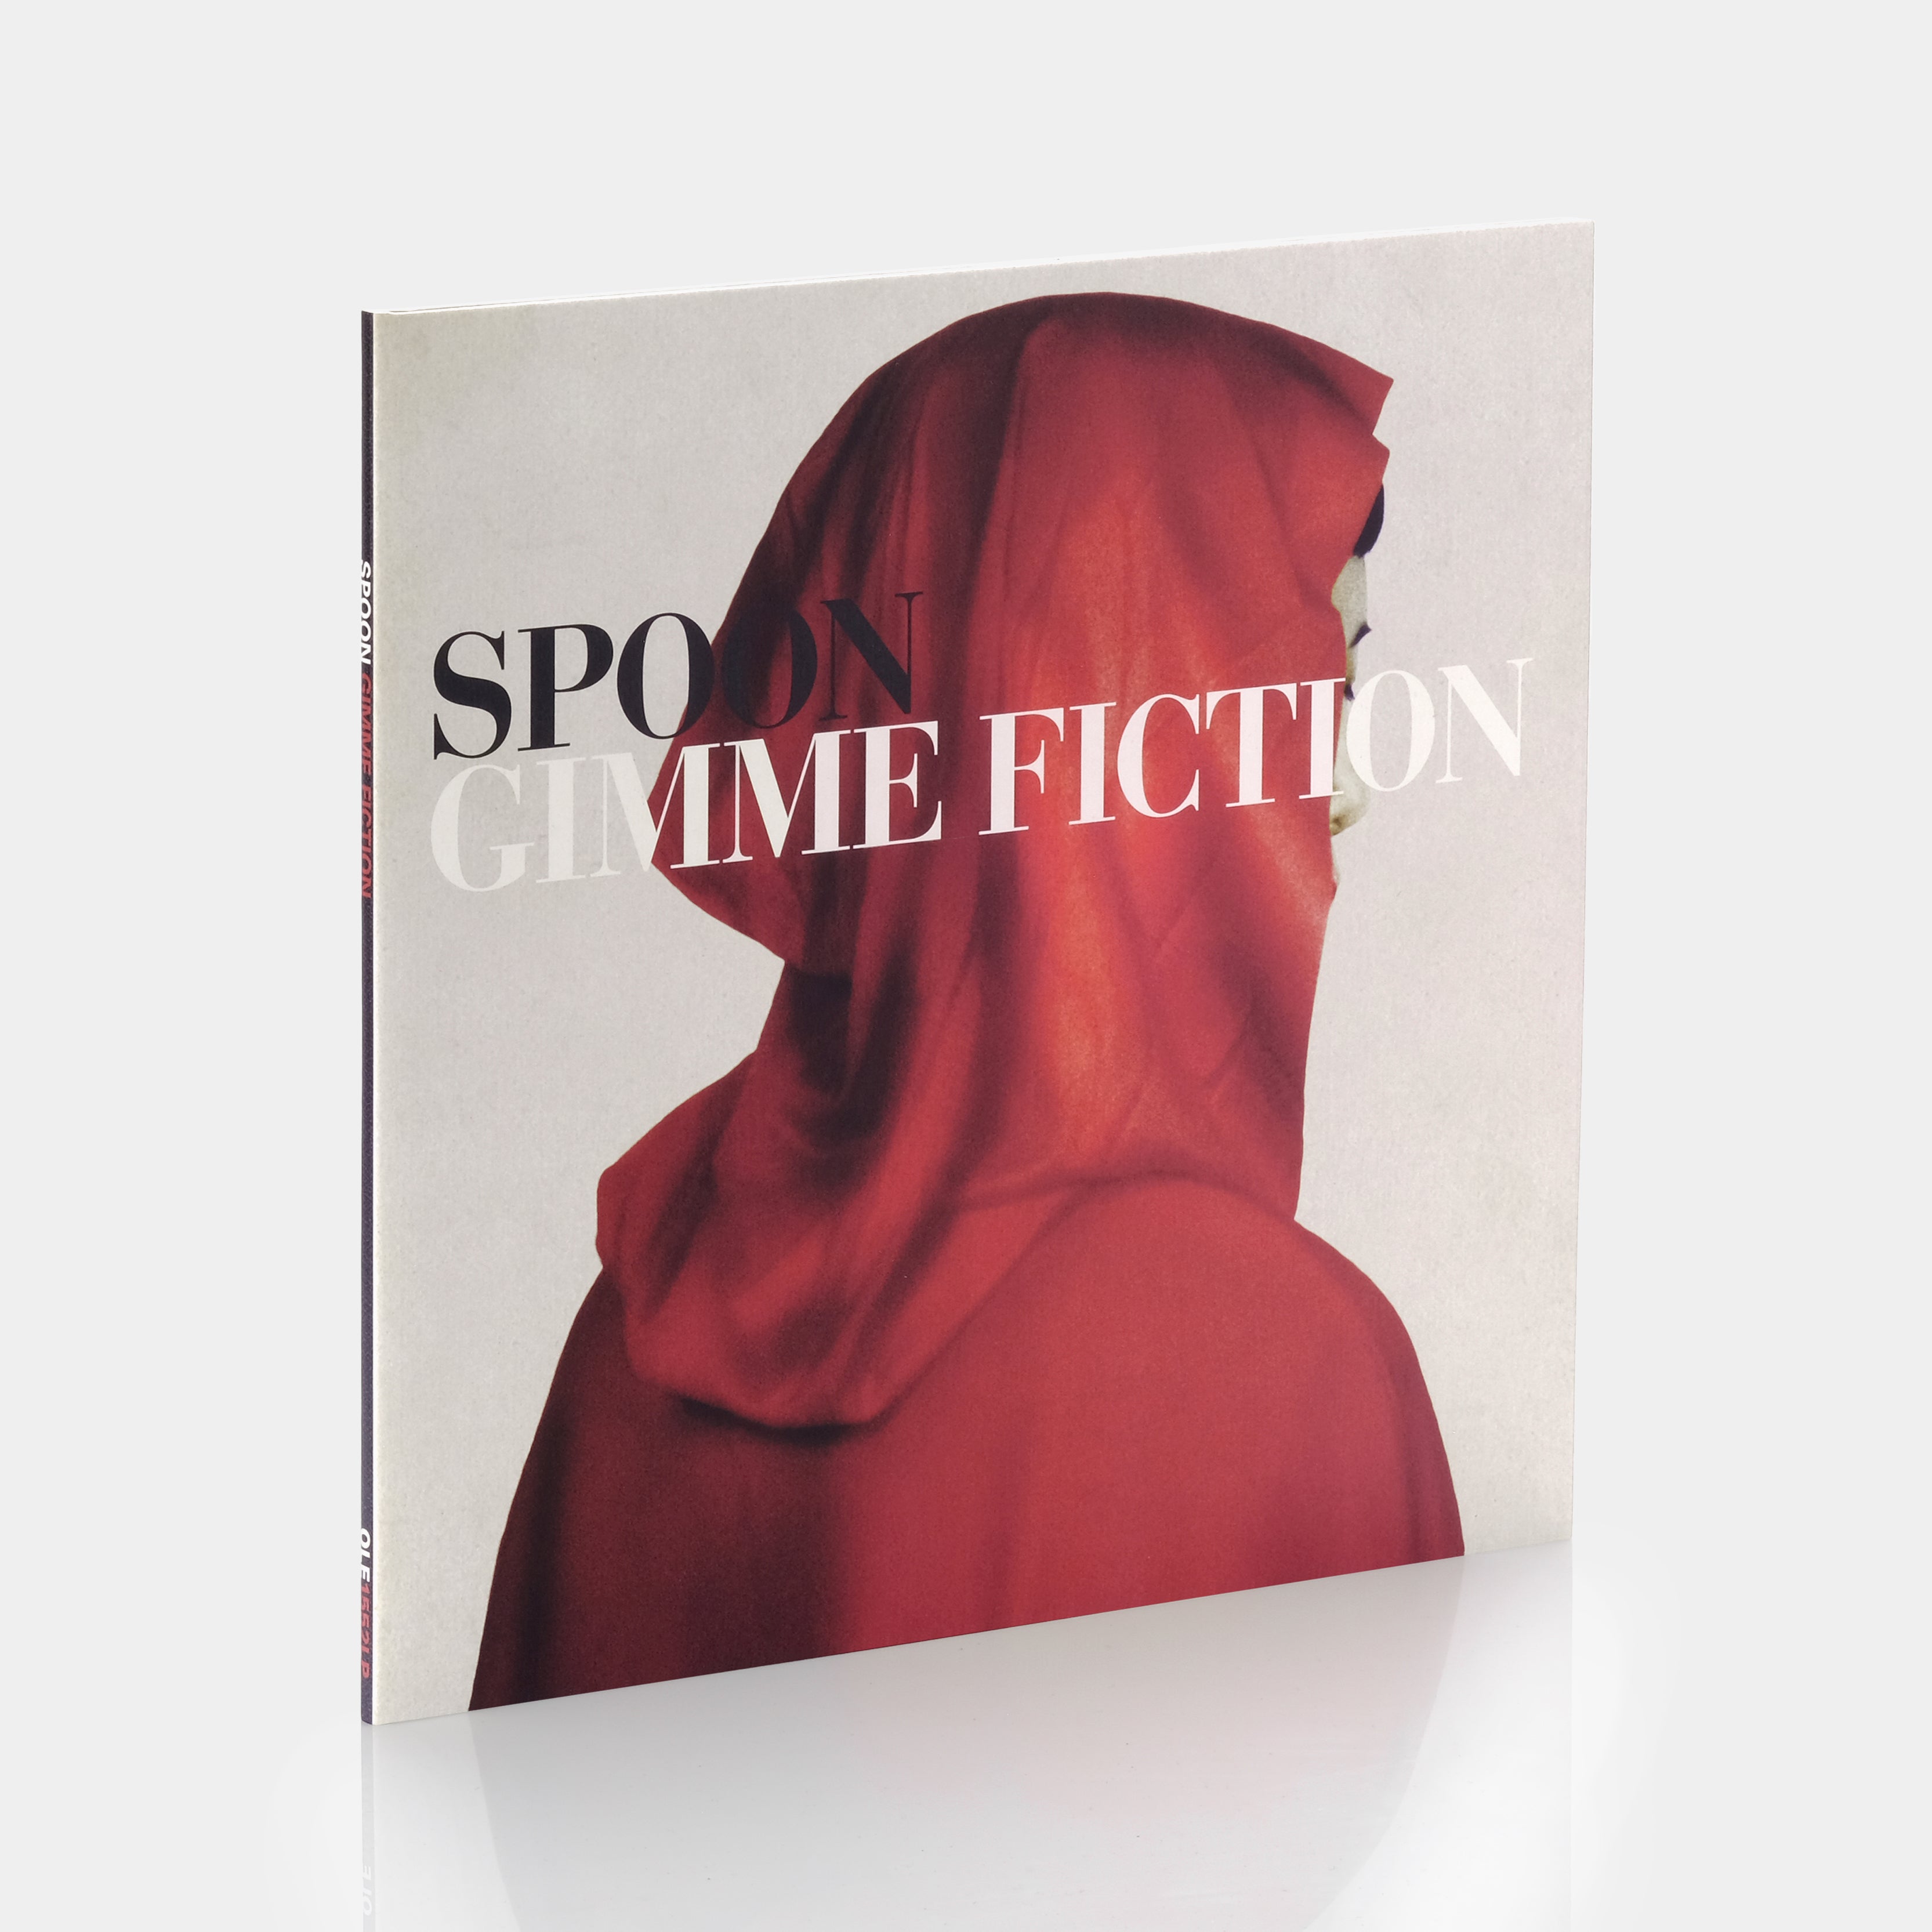 Spoon - Gimme Fiction LP Vinyl Record